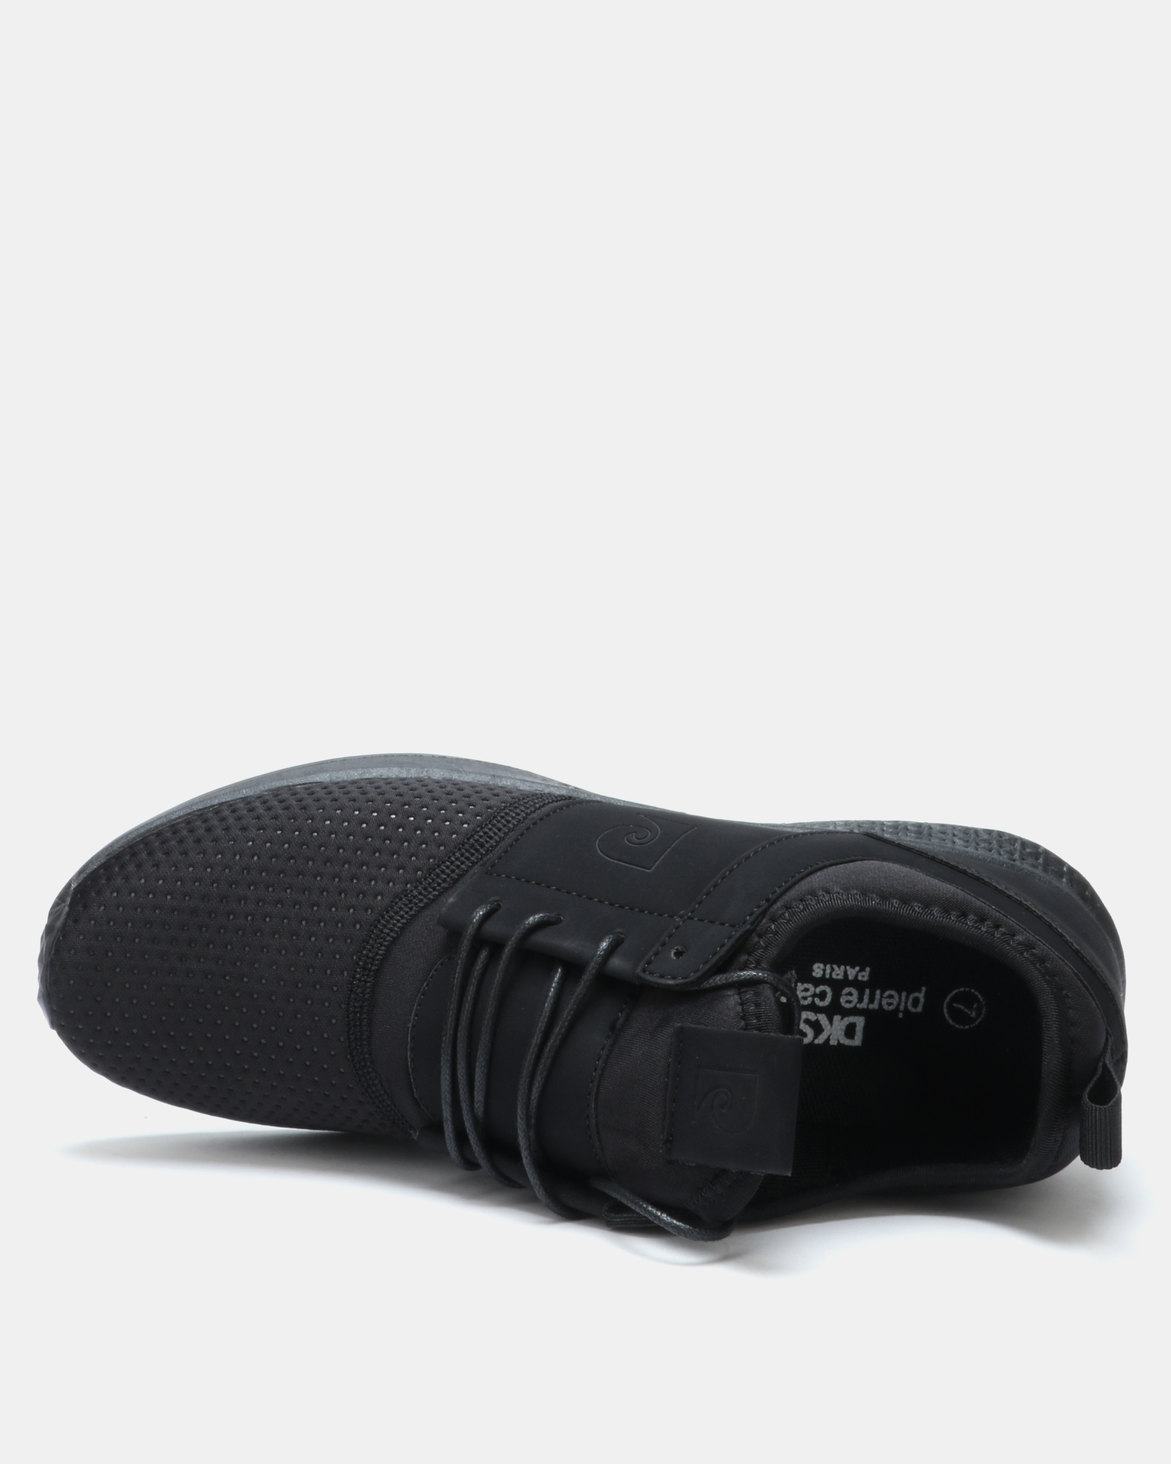 Pierre Cardin 00204 Sneakers Mono Black | Zando